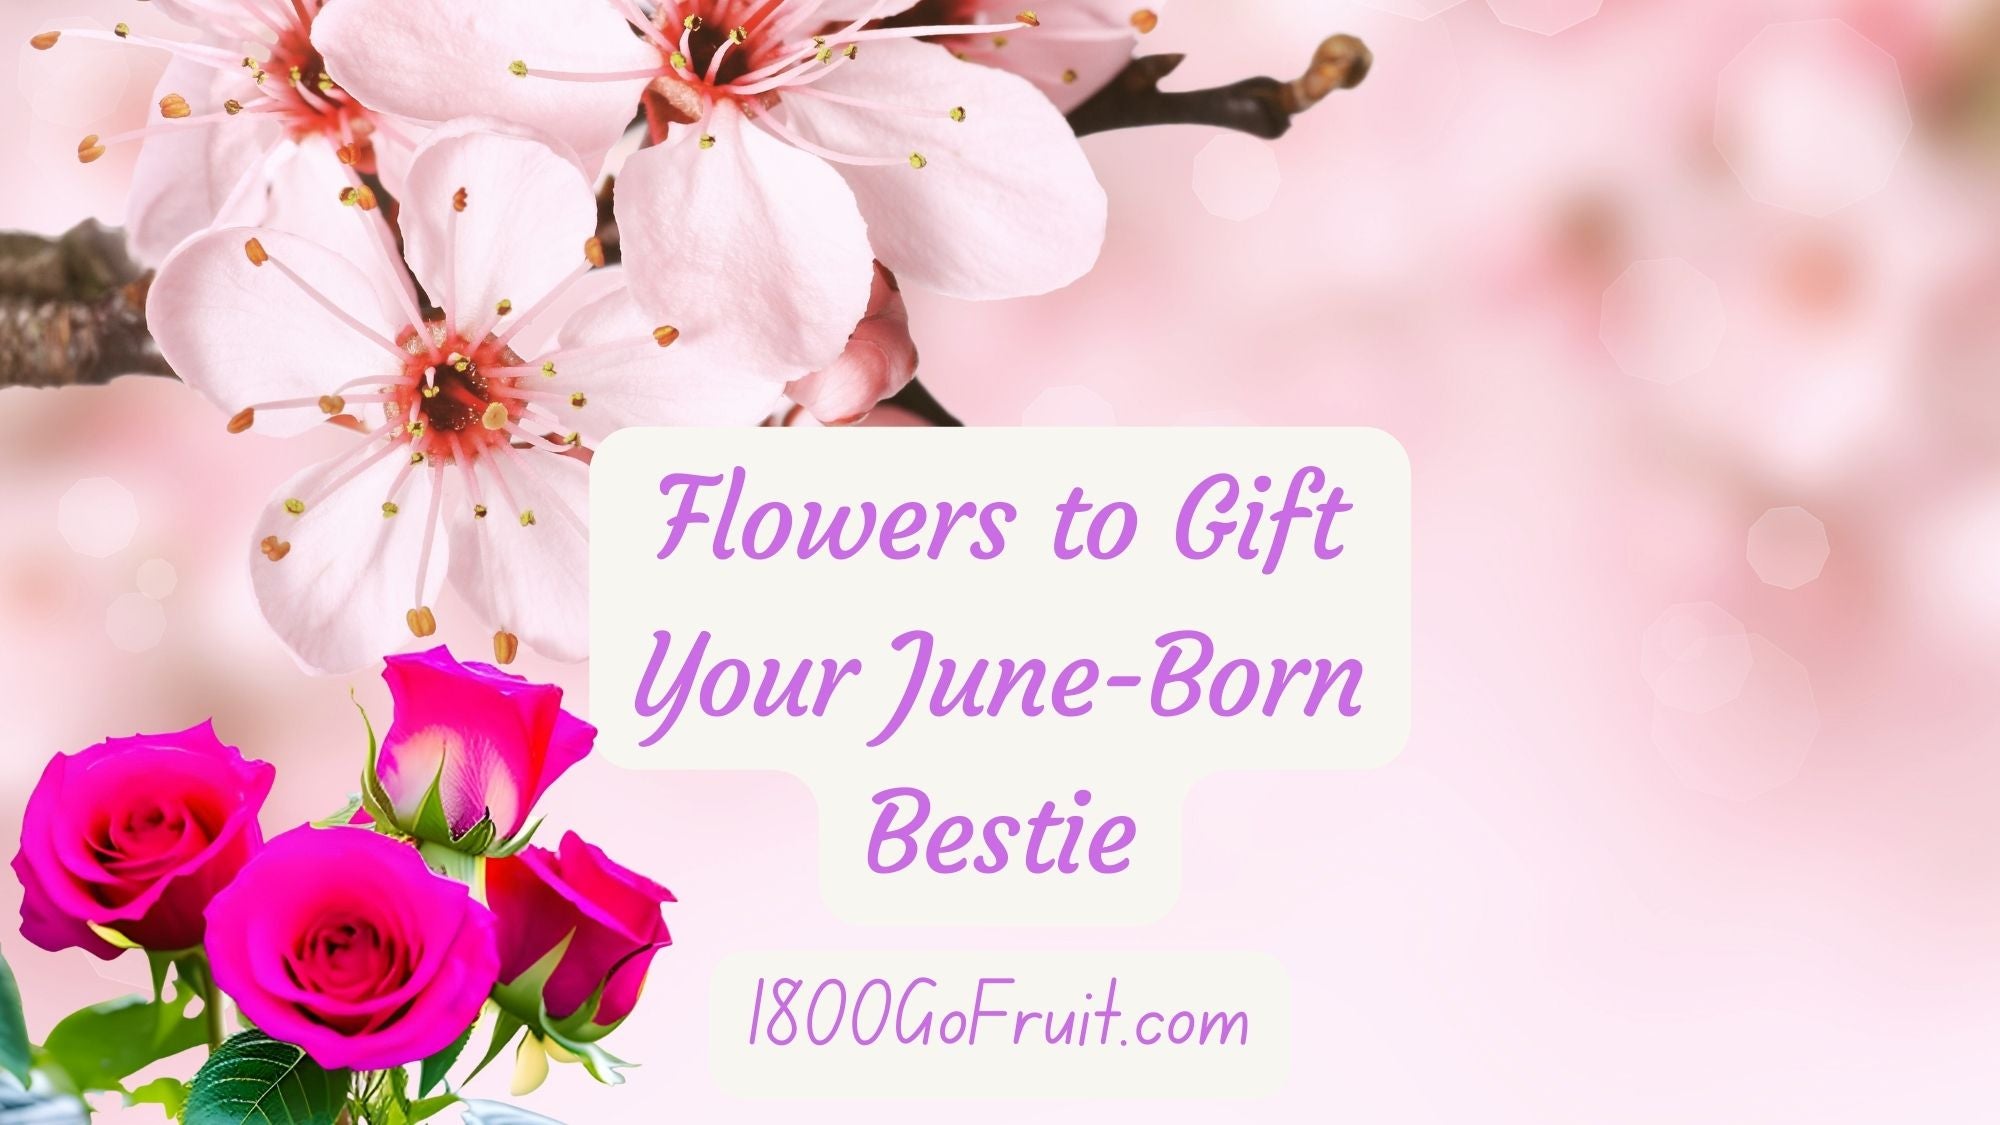 June Born Bestie gifts